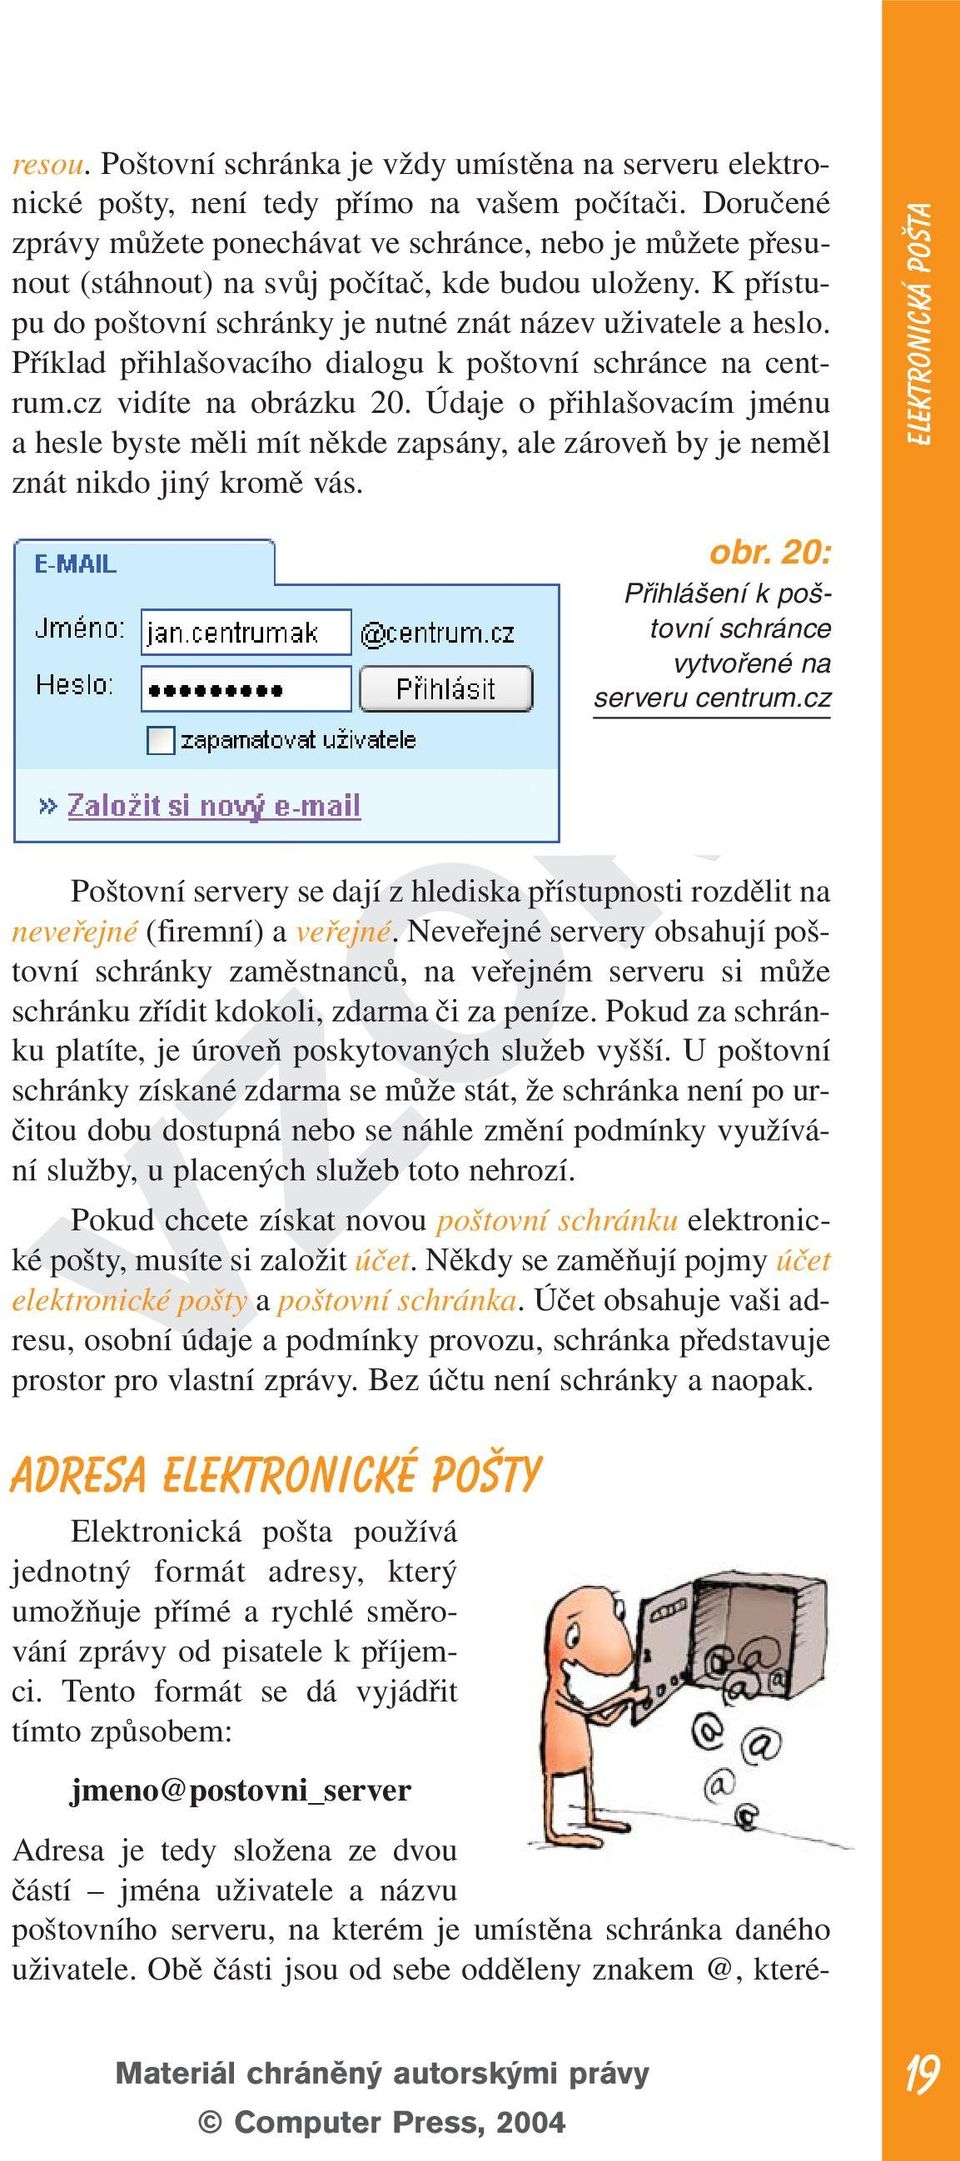 Příklad přihlašovacího dialogu k poštovní schránce na centrum.cz vidíte na obrázku 20.